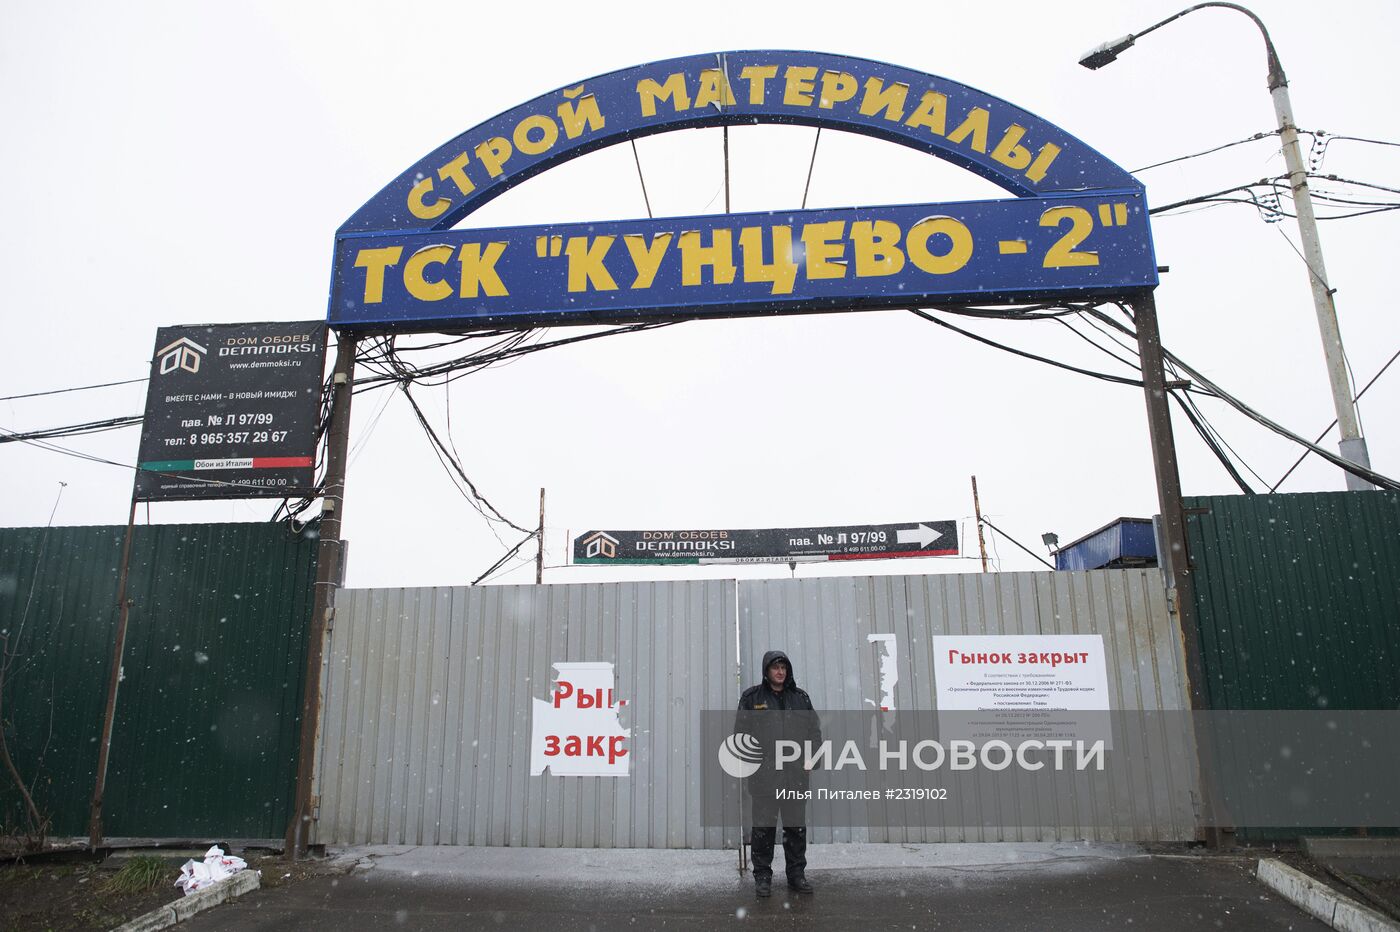 Cтроительный рынок "Кунцево-2" закрыт